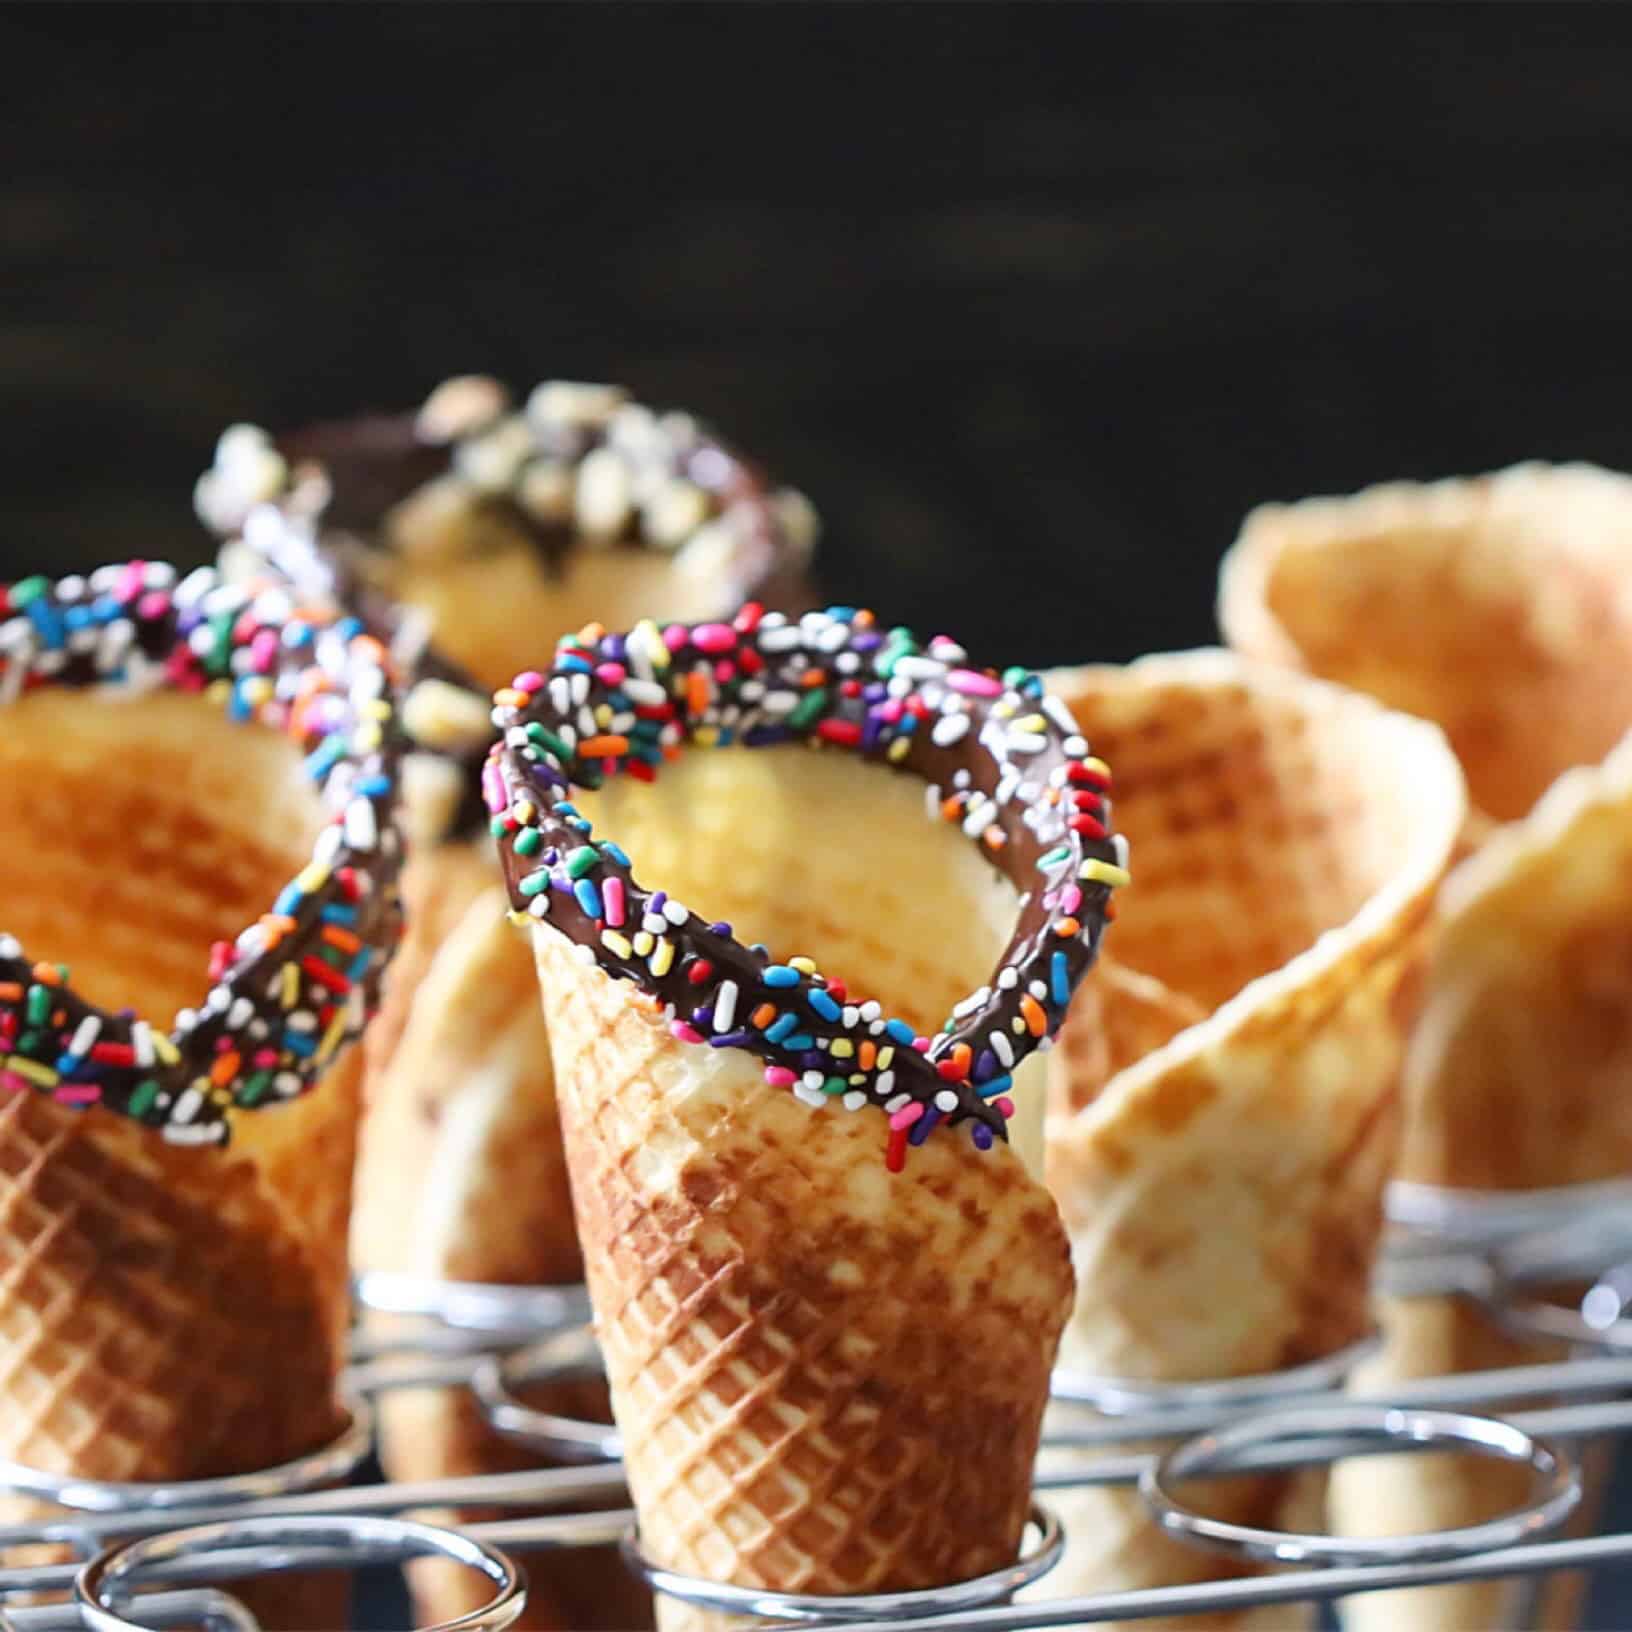 CucinaPro Mini Waffle Ice Cream Cone Maker - Makes 4